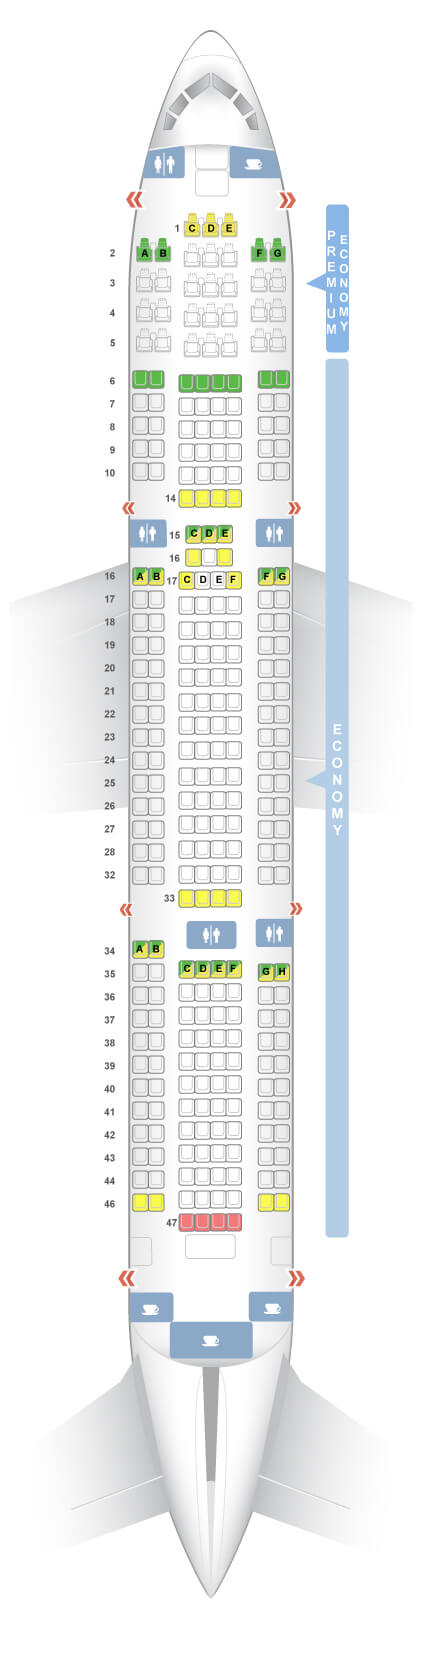 TUI 767 Seat Plan — TUI 767-300ER